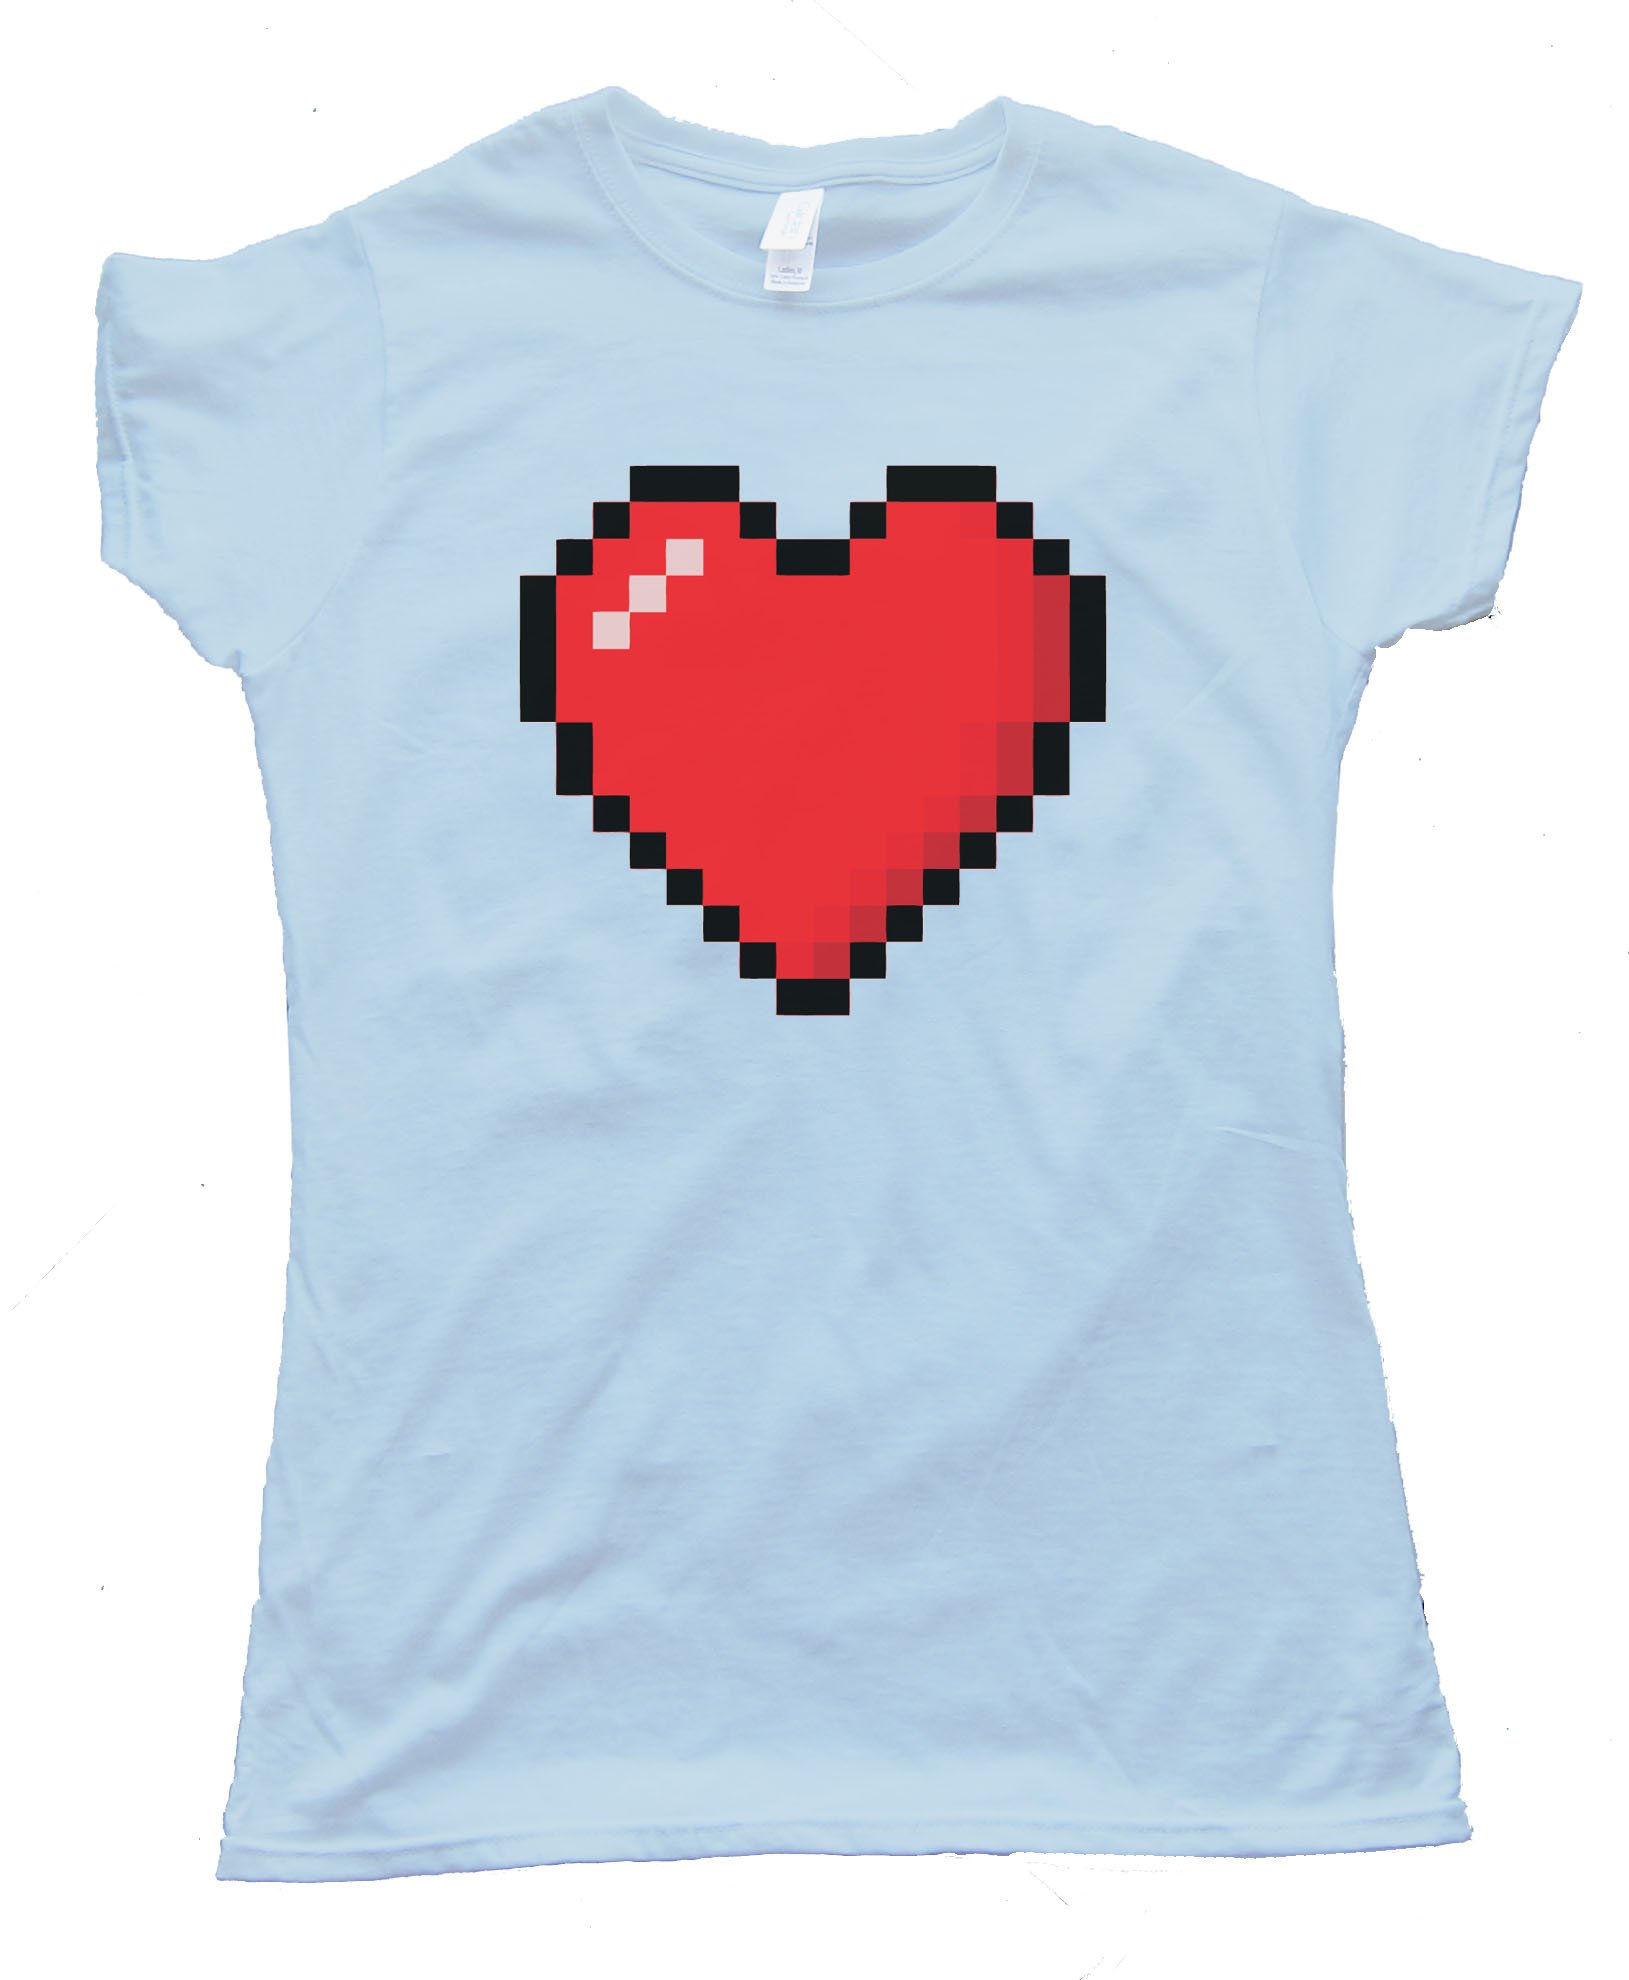 Womens 8 Bit Heart Shirt - Tee Shirt